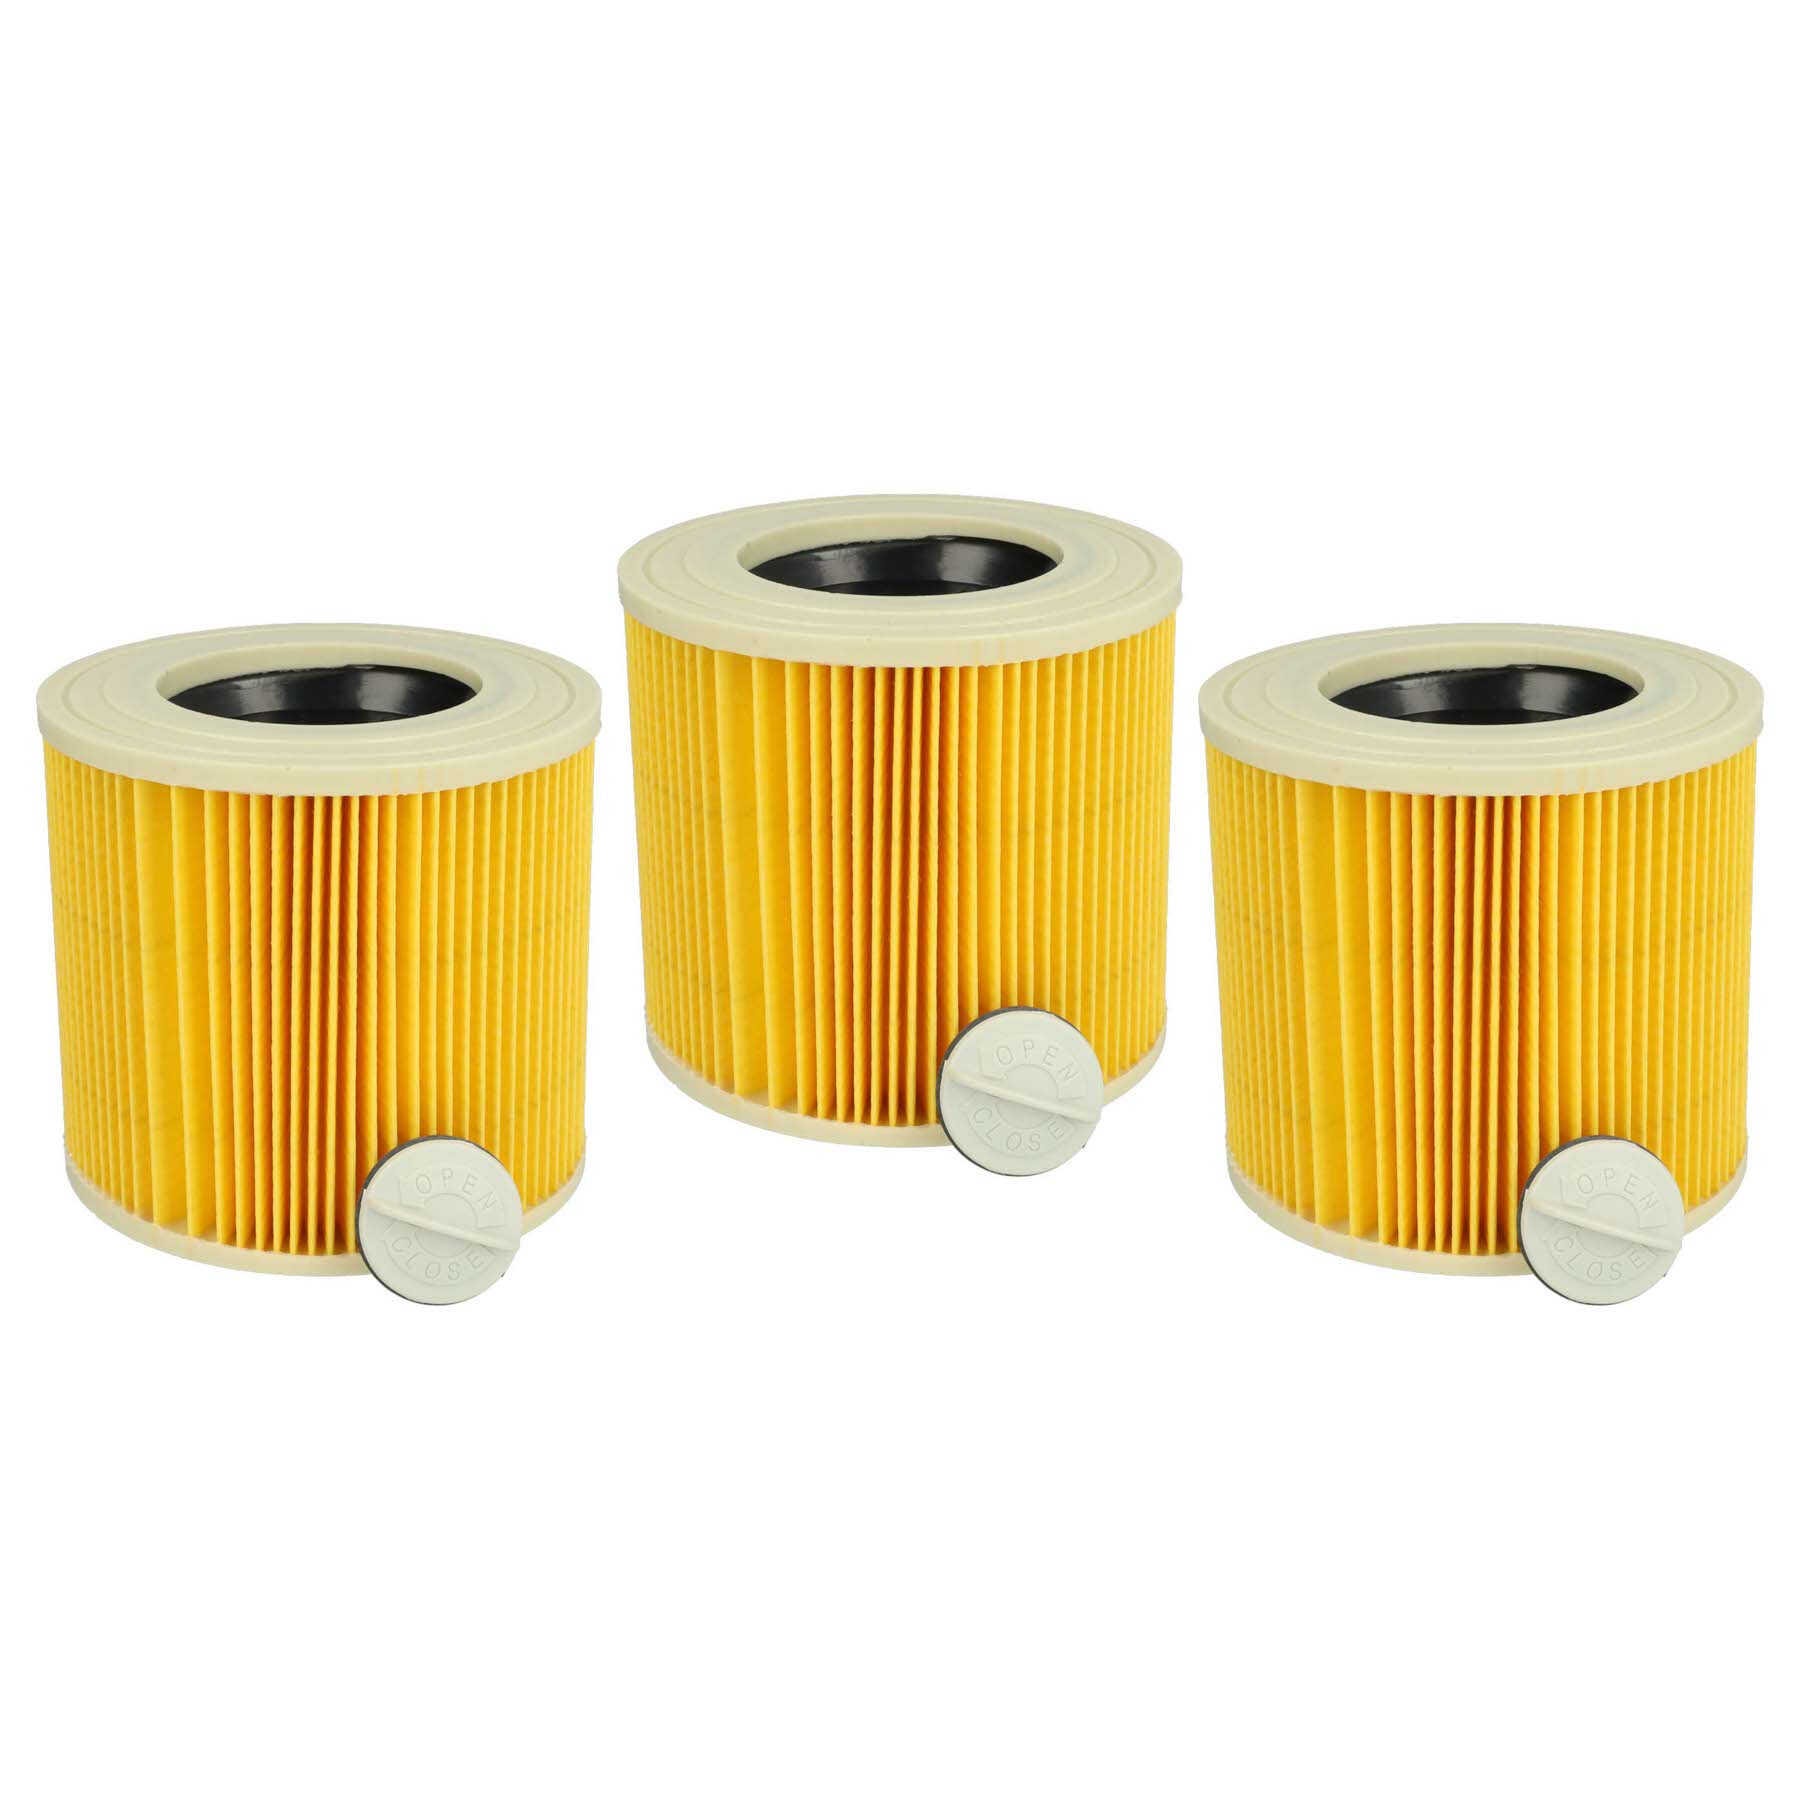 Vhbw Lot de 3x filtres à cartouche compatible avec Kärcher A 2231 PT, A  2234 pt aspirateur à sec ou humide - Filtre plissé, jaune